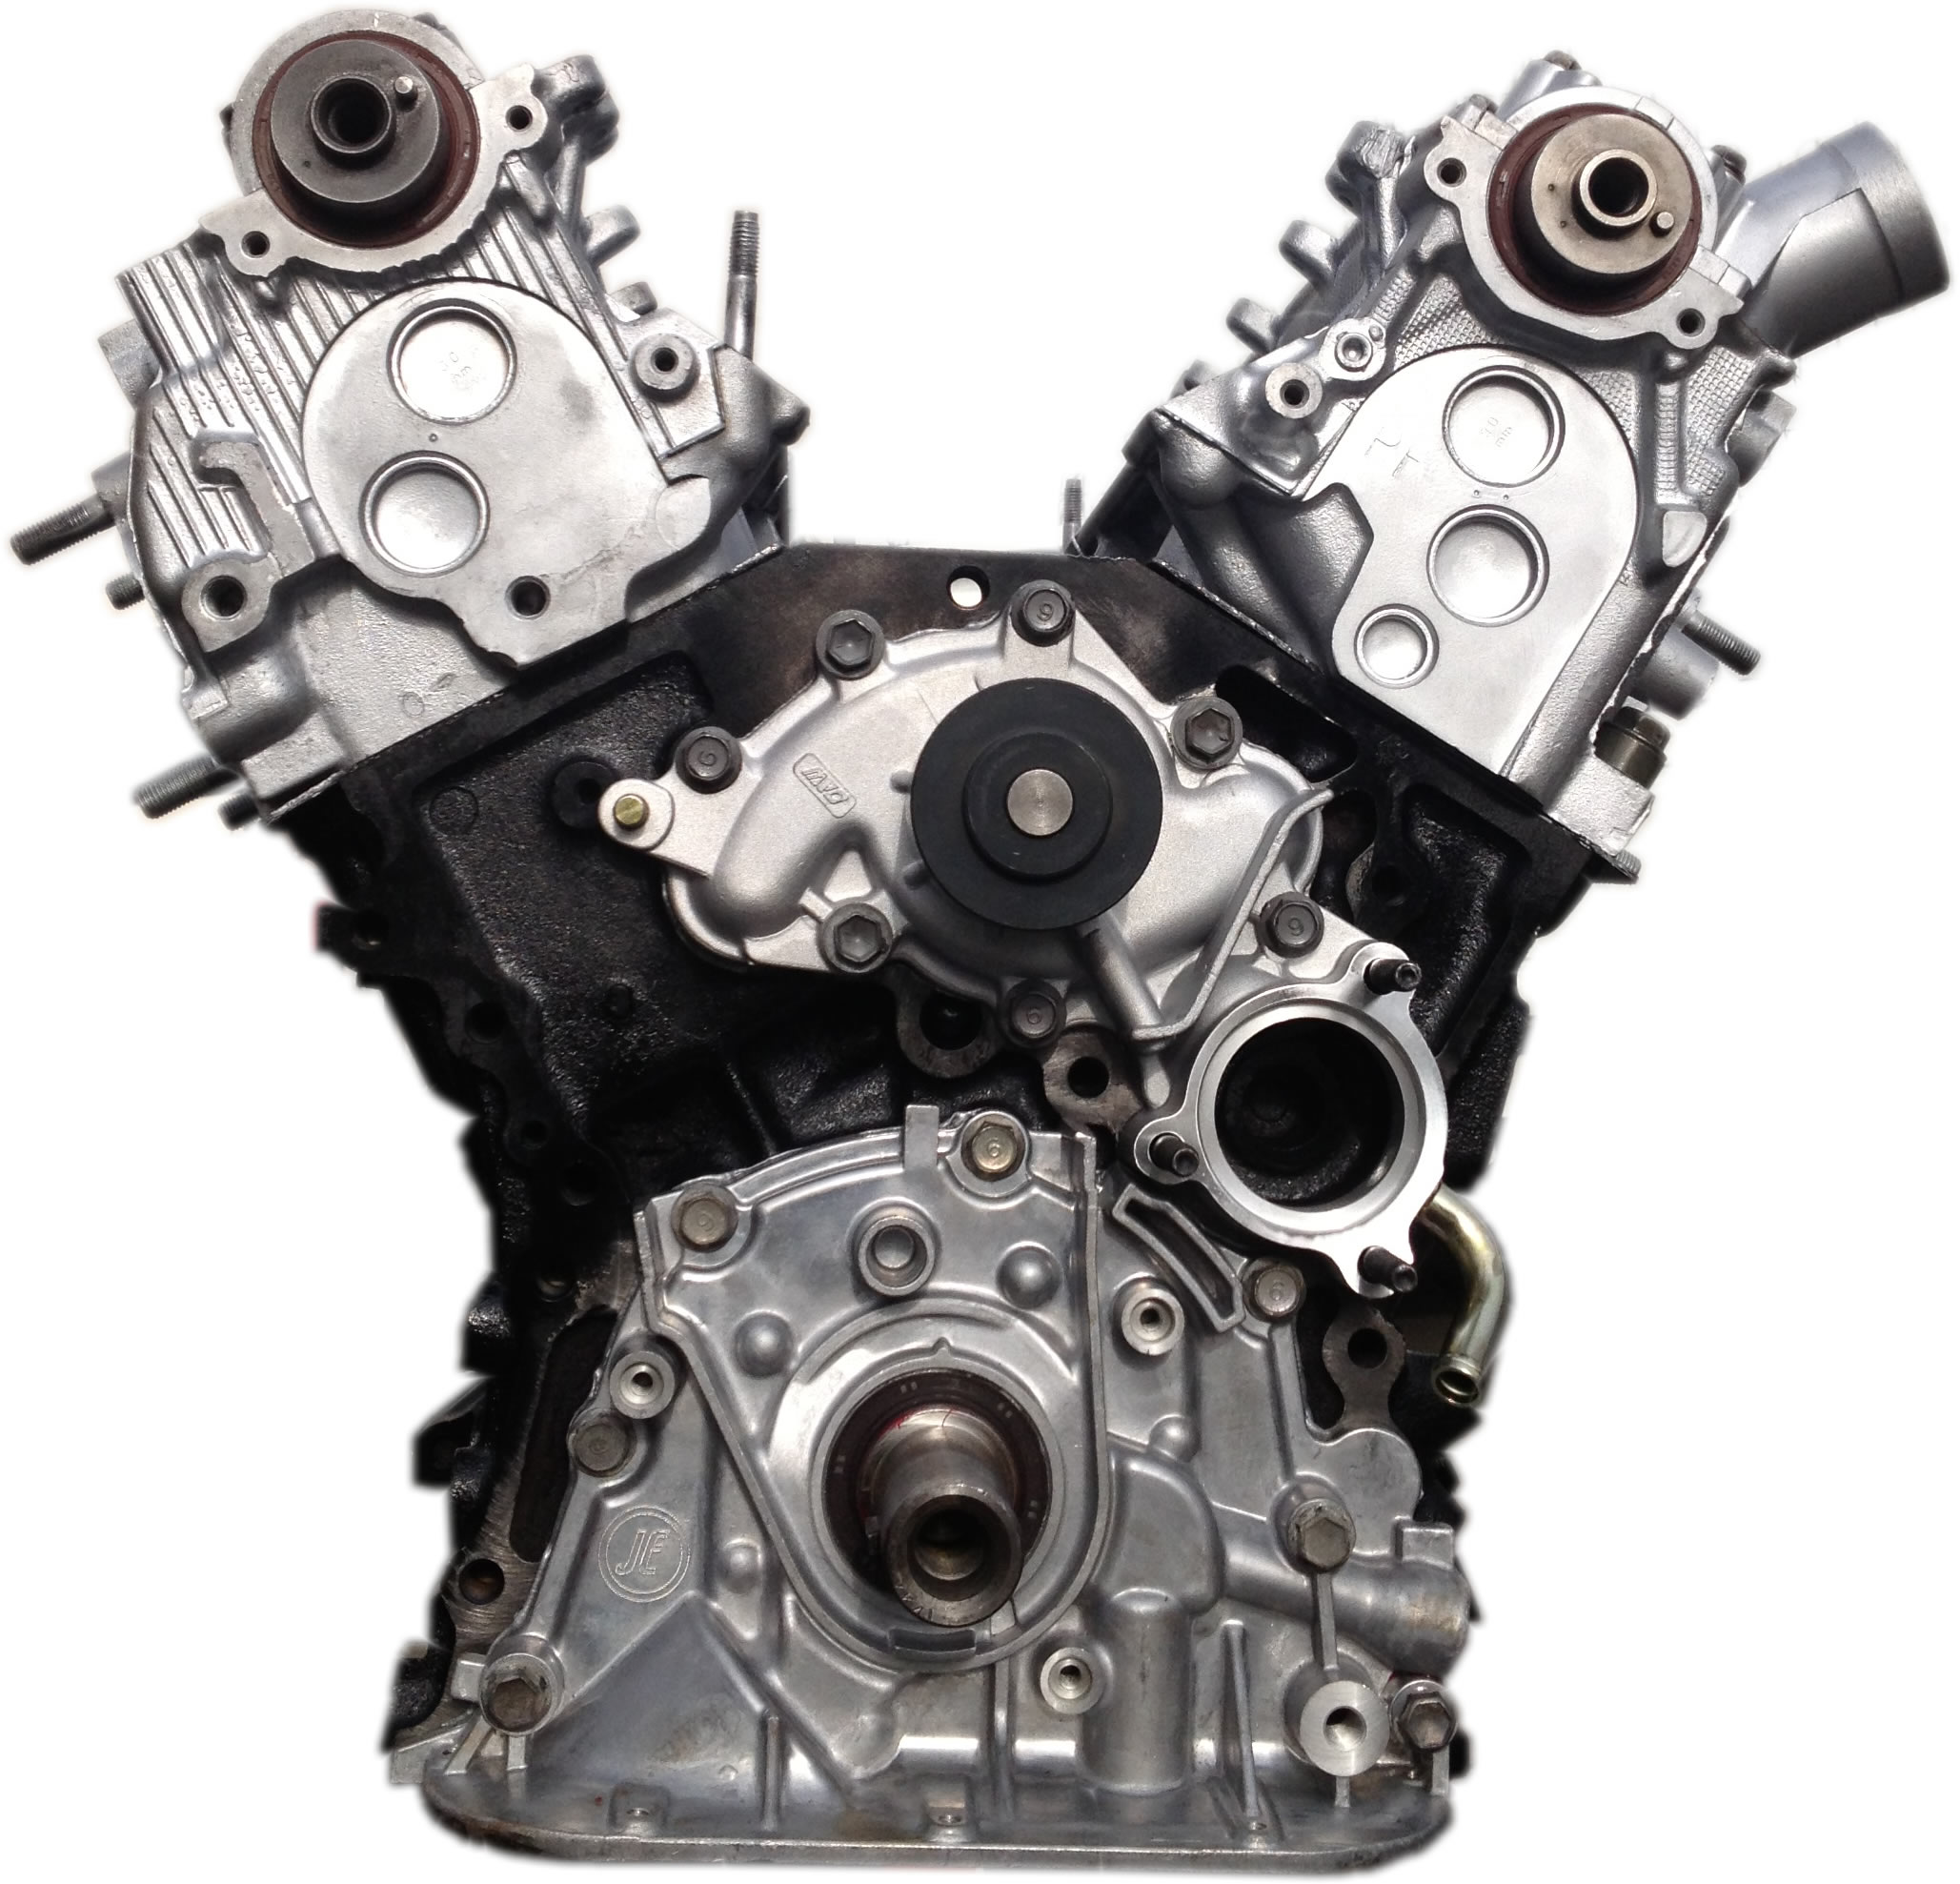 Rebuilt 89-95 Toyota 4Runner V6 3.0L 3VZE Engine | eBay